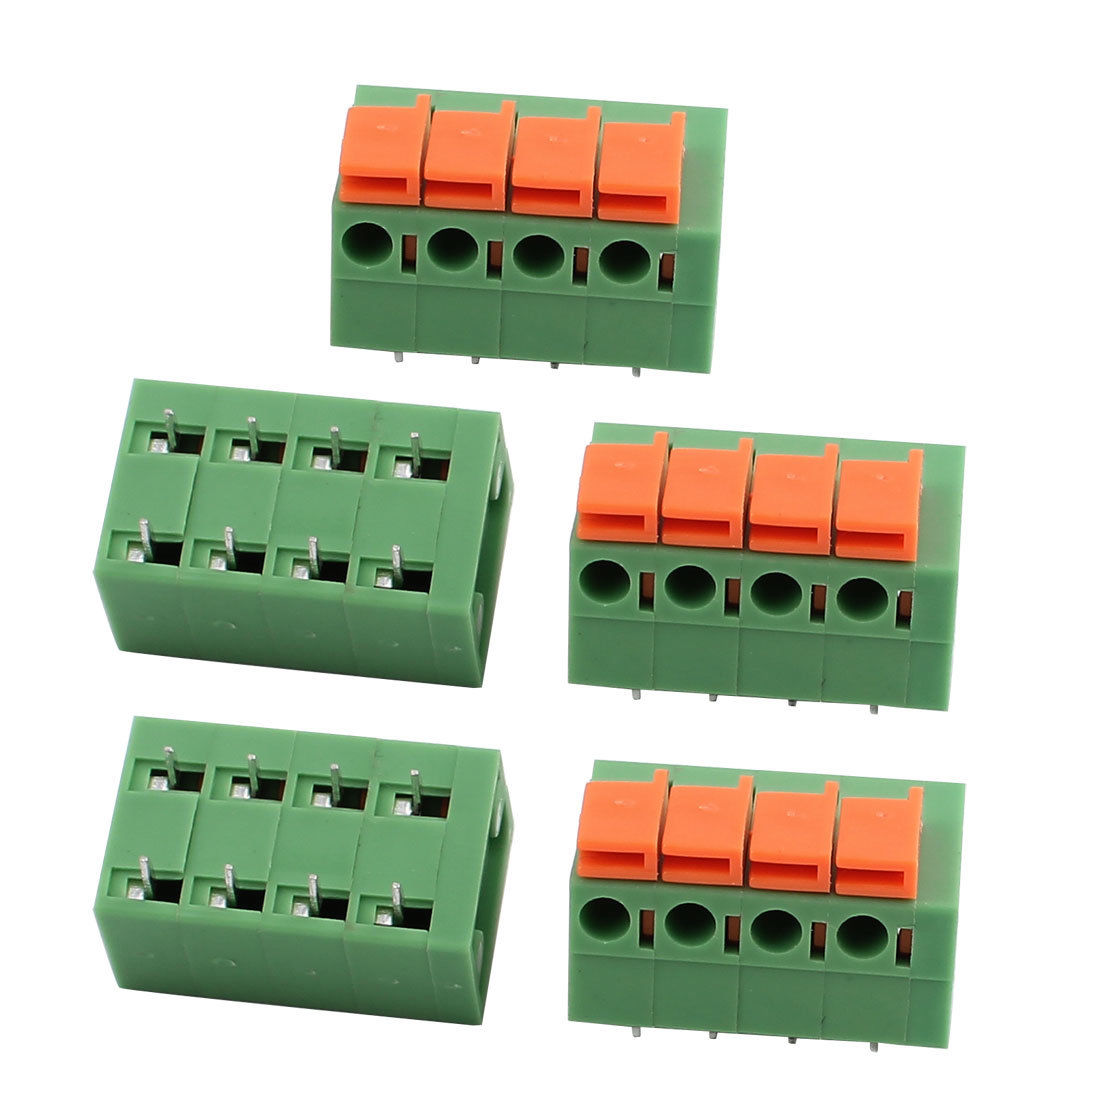 印刷电路板弹簧端子板DG 142R ( KF 142R ) - 5.08